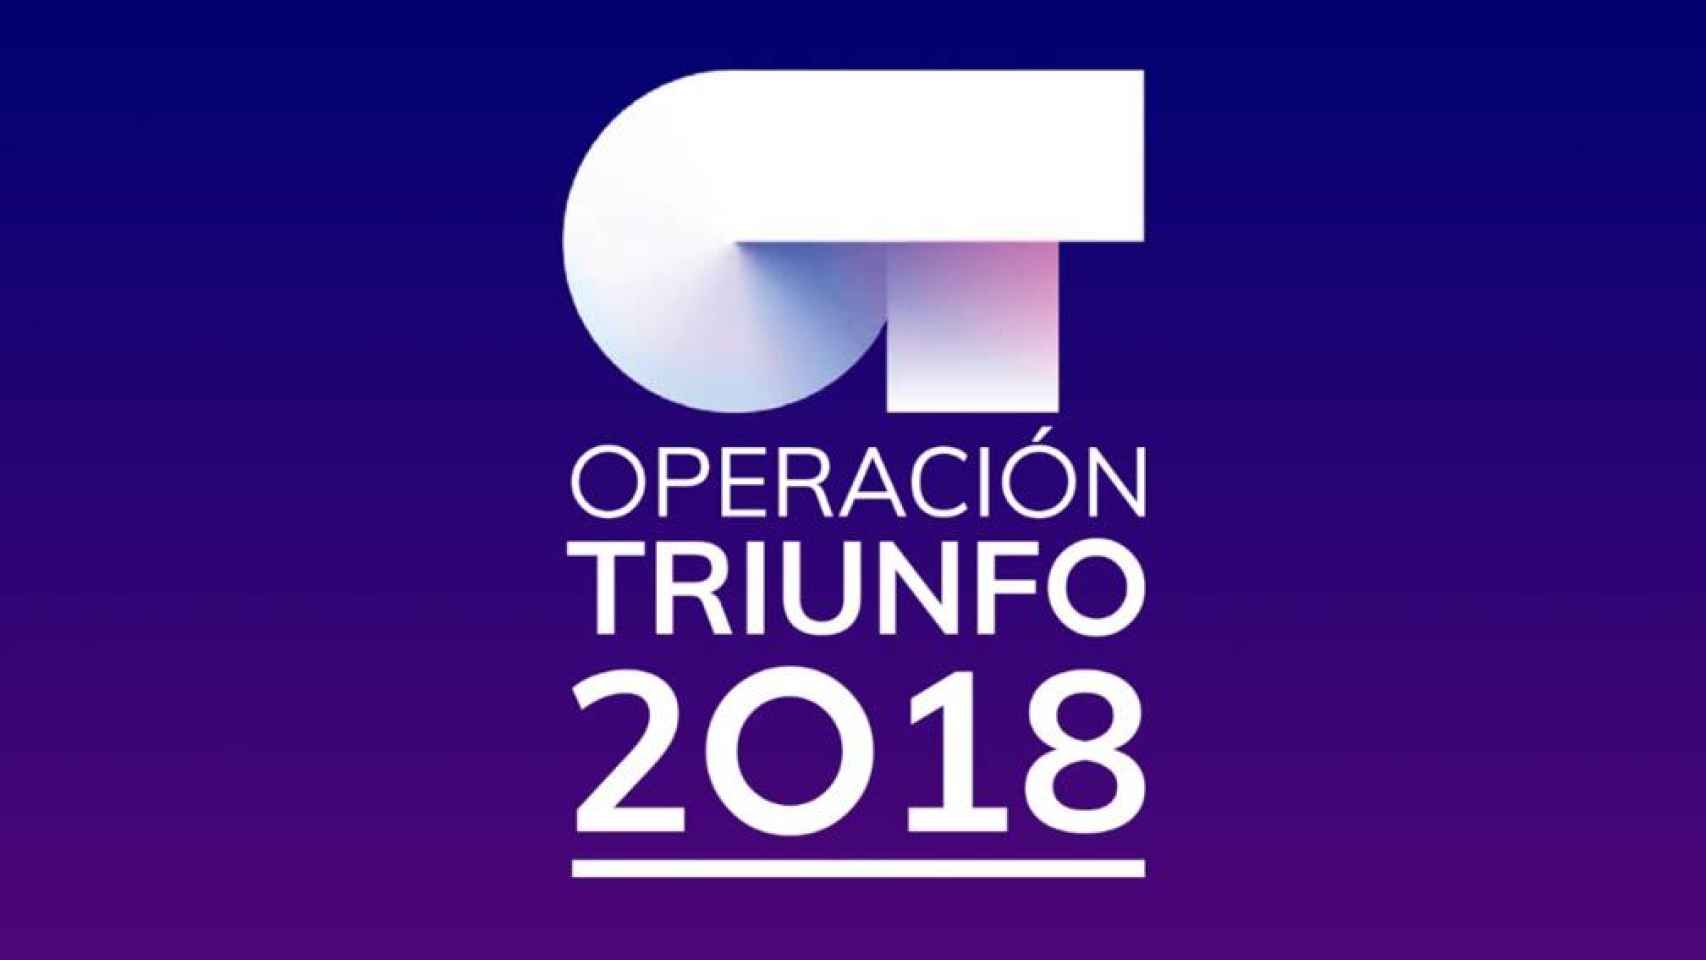 Sigue Operación Triunfo con la aplicación oficial OT 2018 para Android